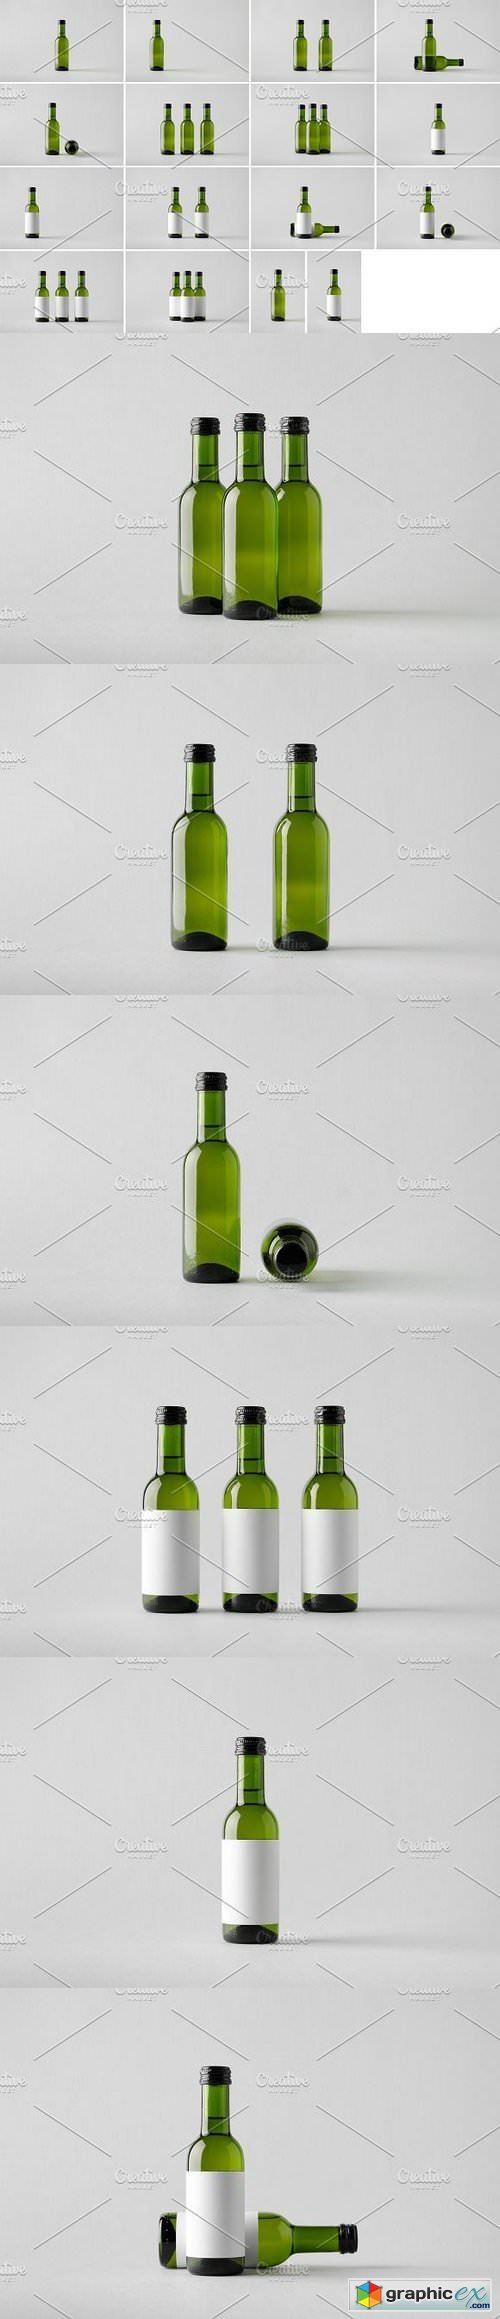 Wine Bottle Mock-Up Photo Bundle 1327191